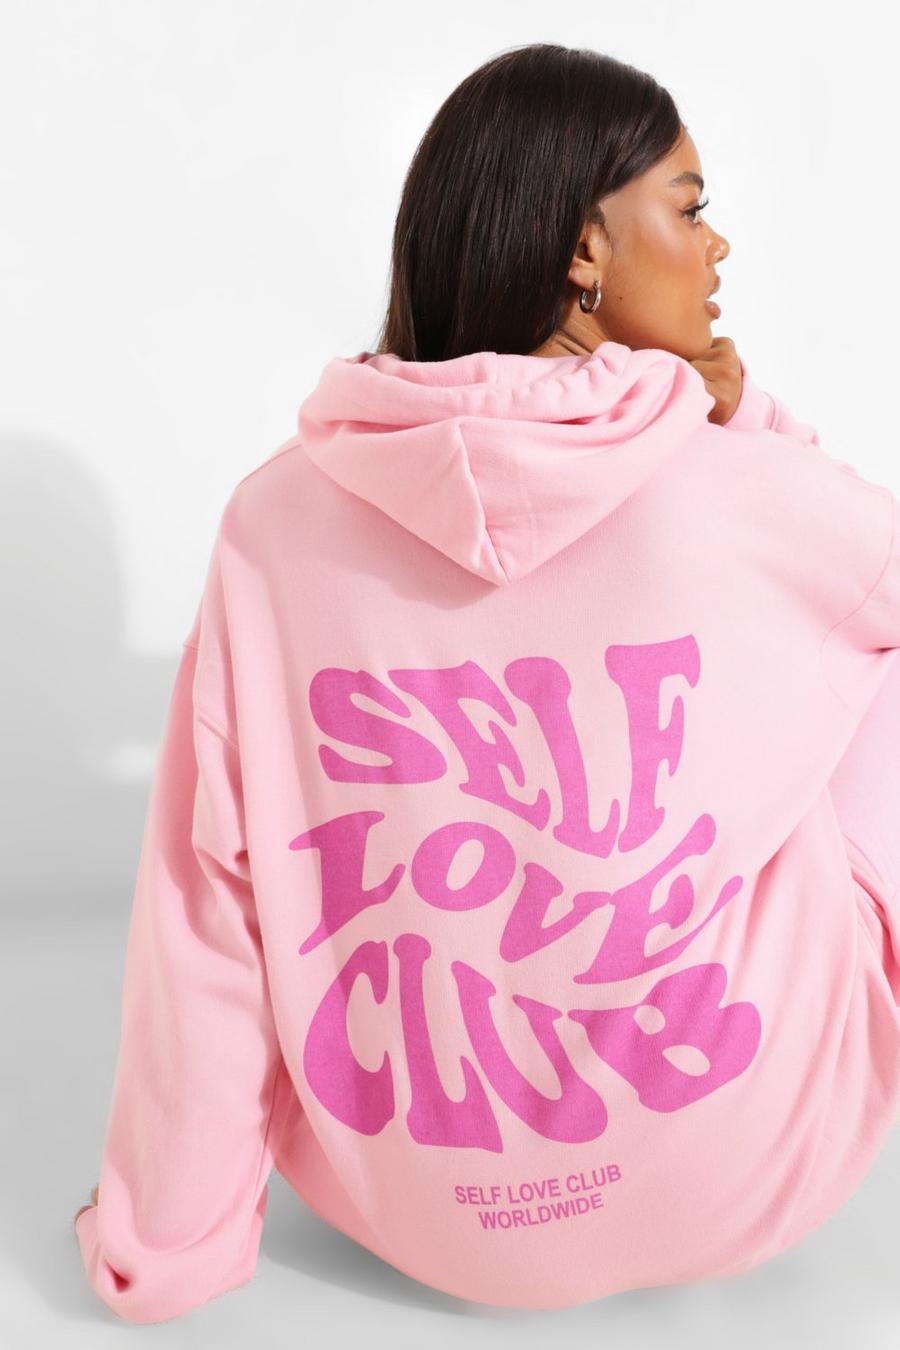 black love pink hoodies